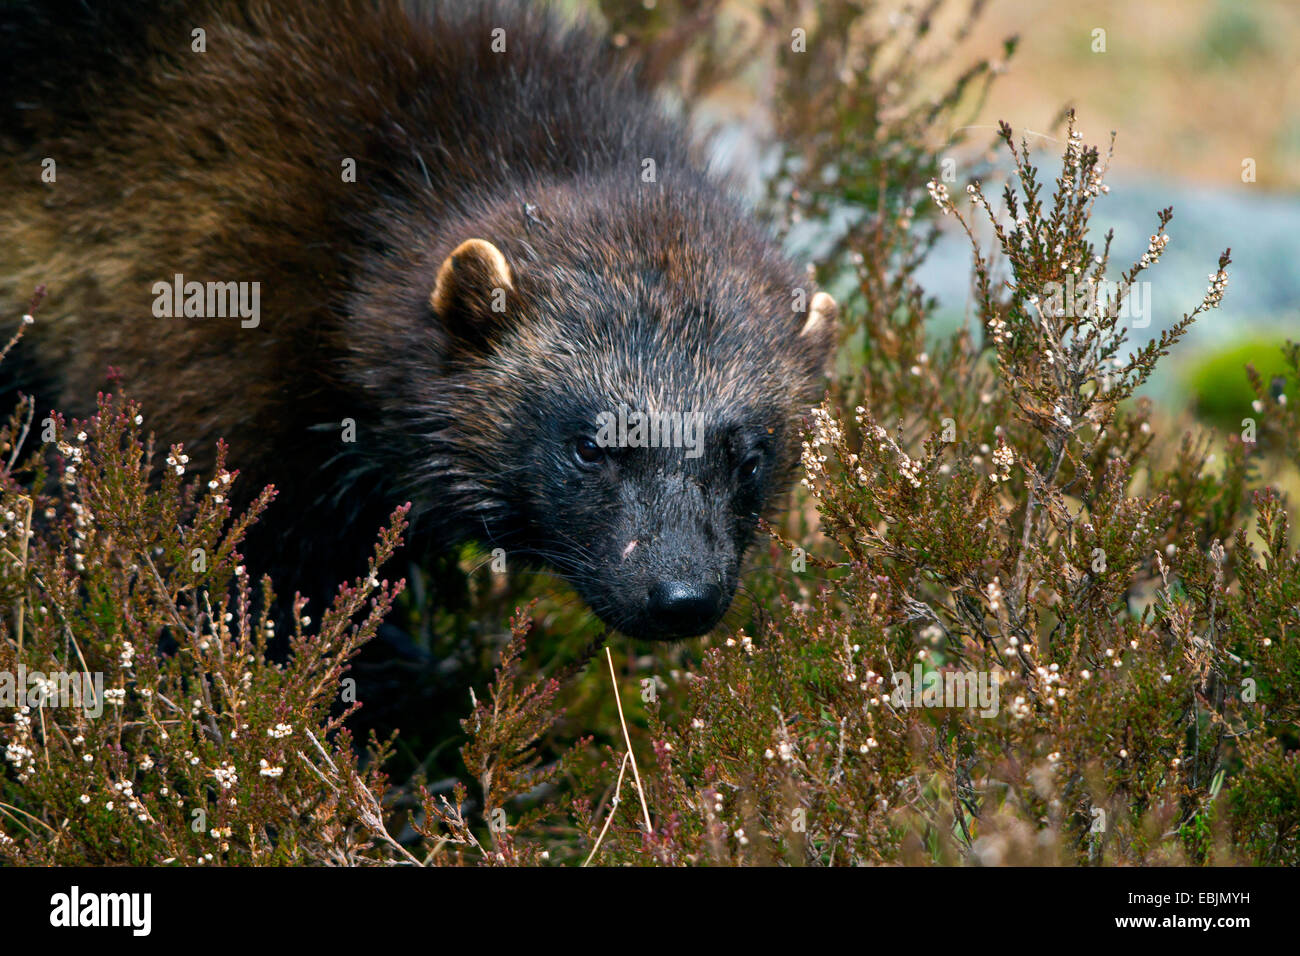 wolverine (Gulo gulo), in heath, portrait, Sweden, Hamra National Park Stock Photo